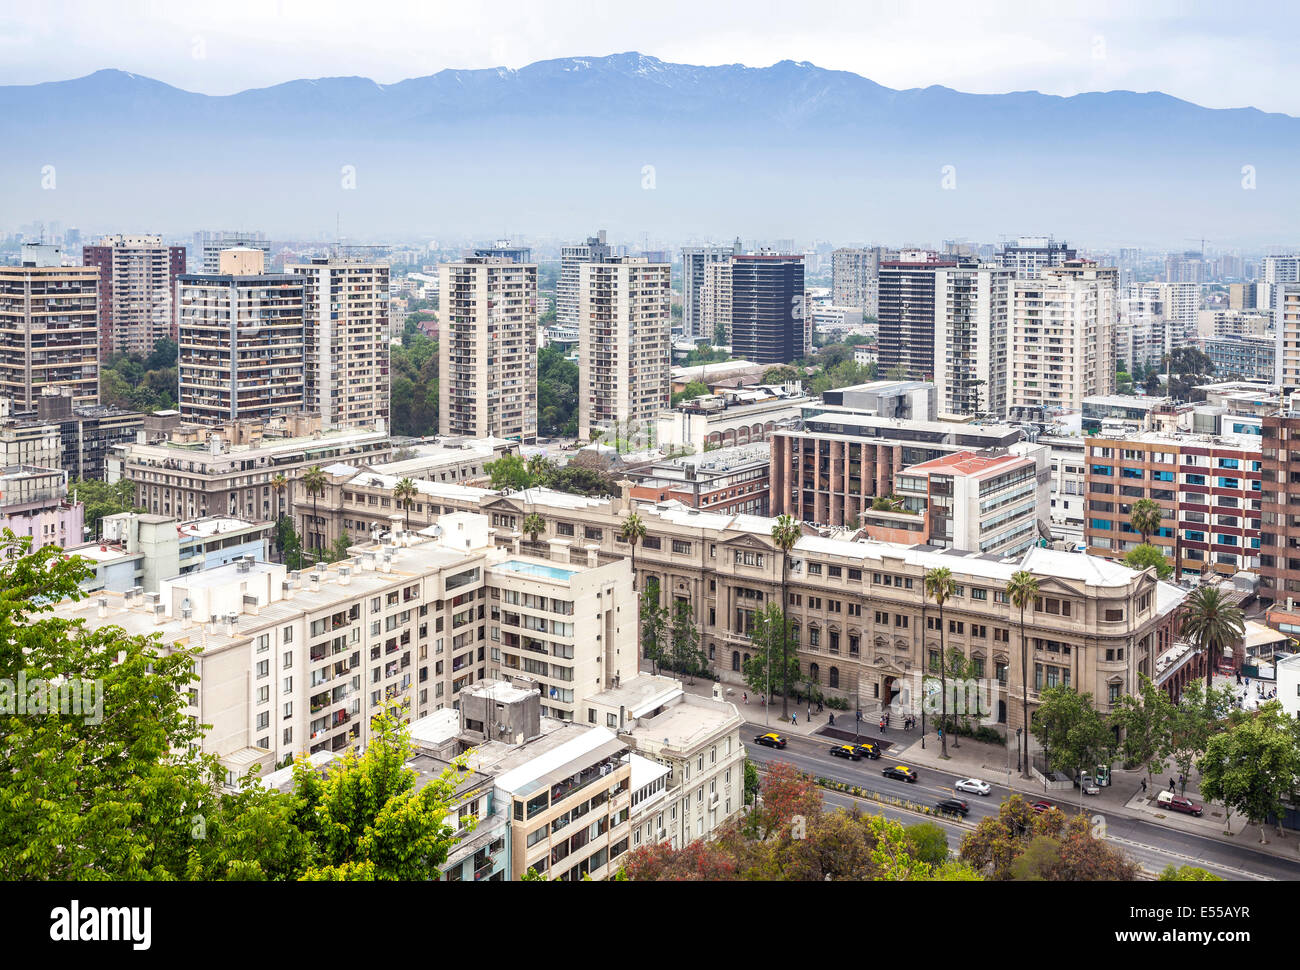 Santiago de Chile downtown skyline. Stock Photo